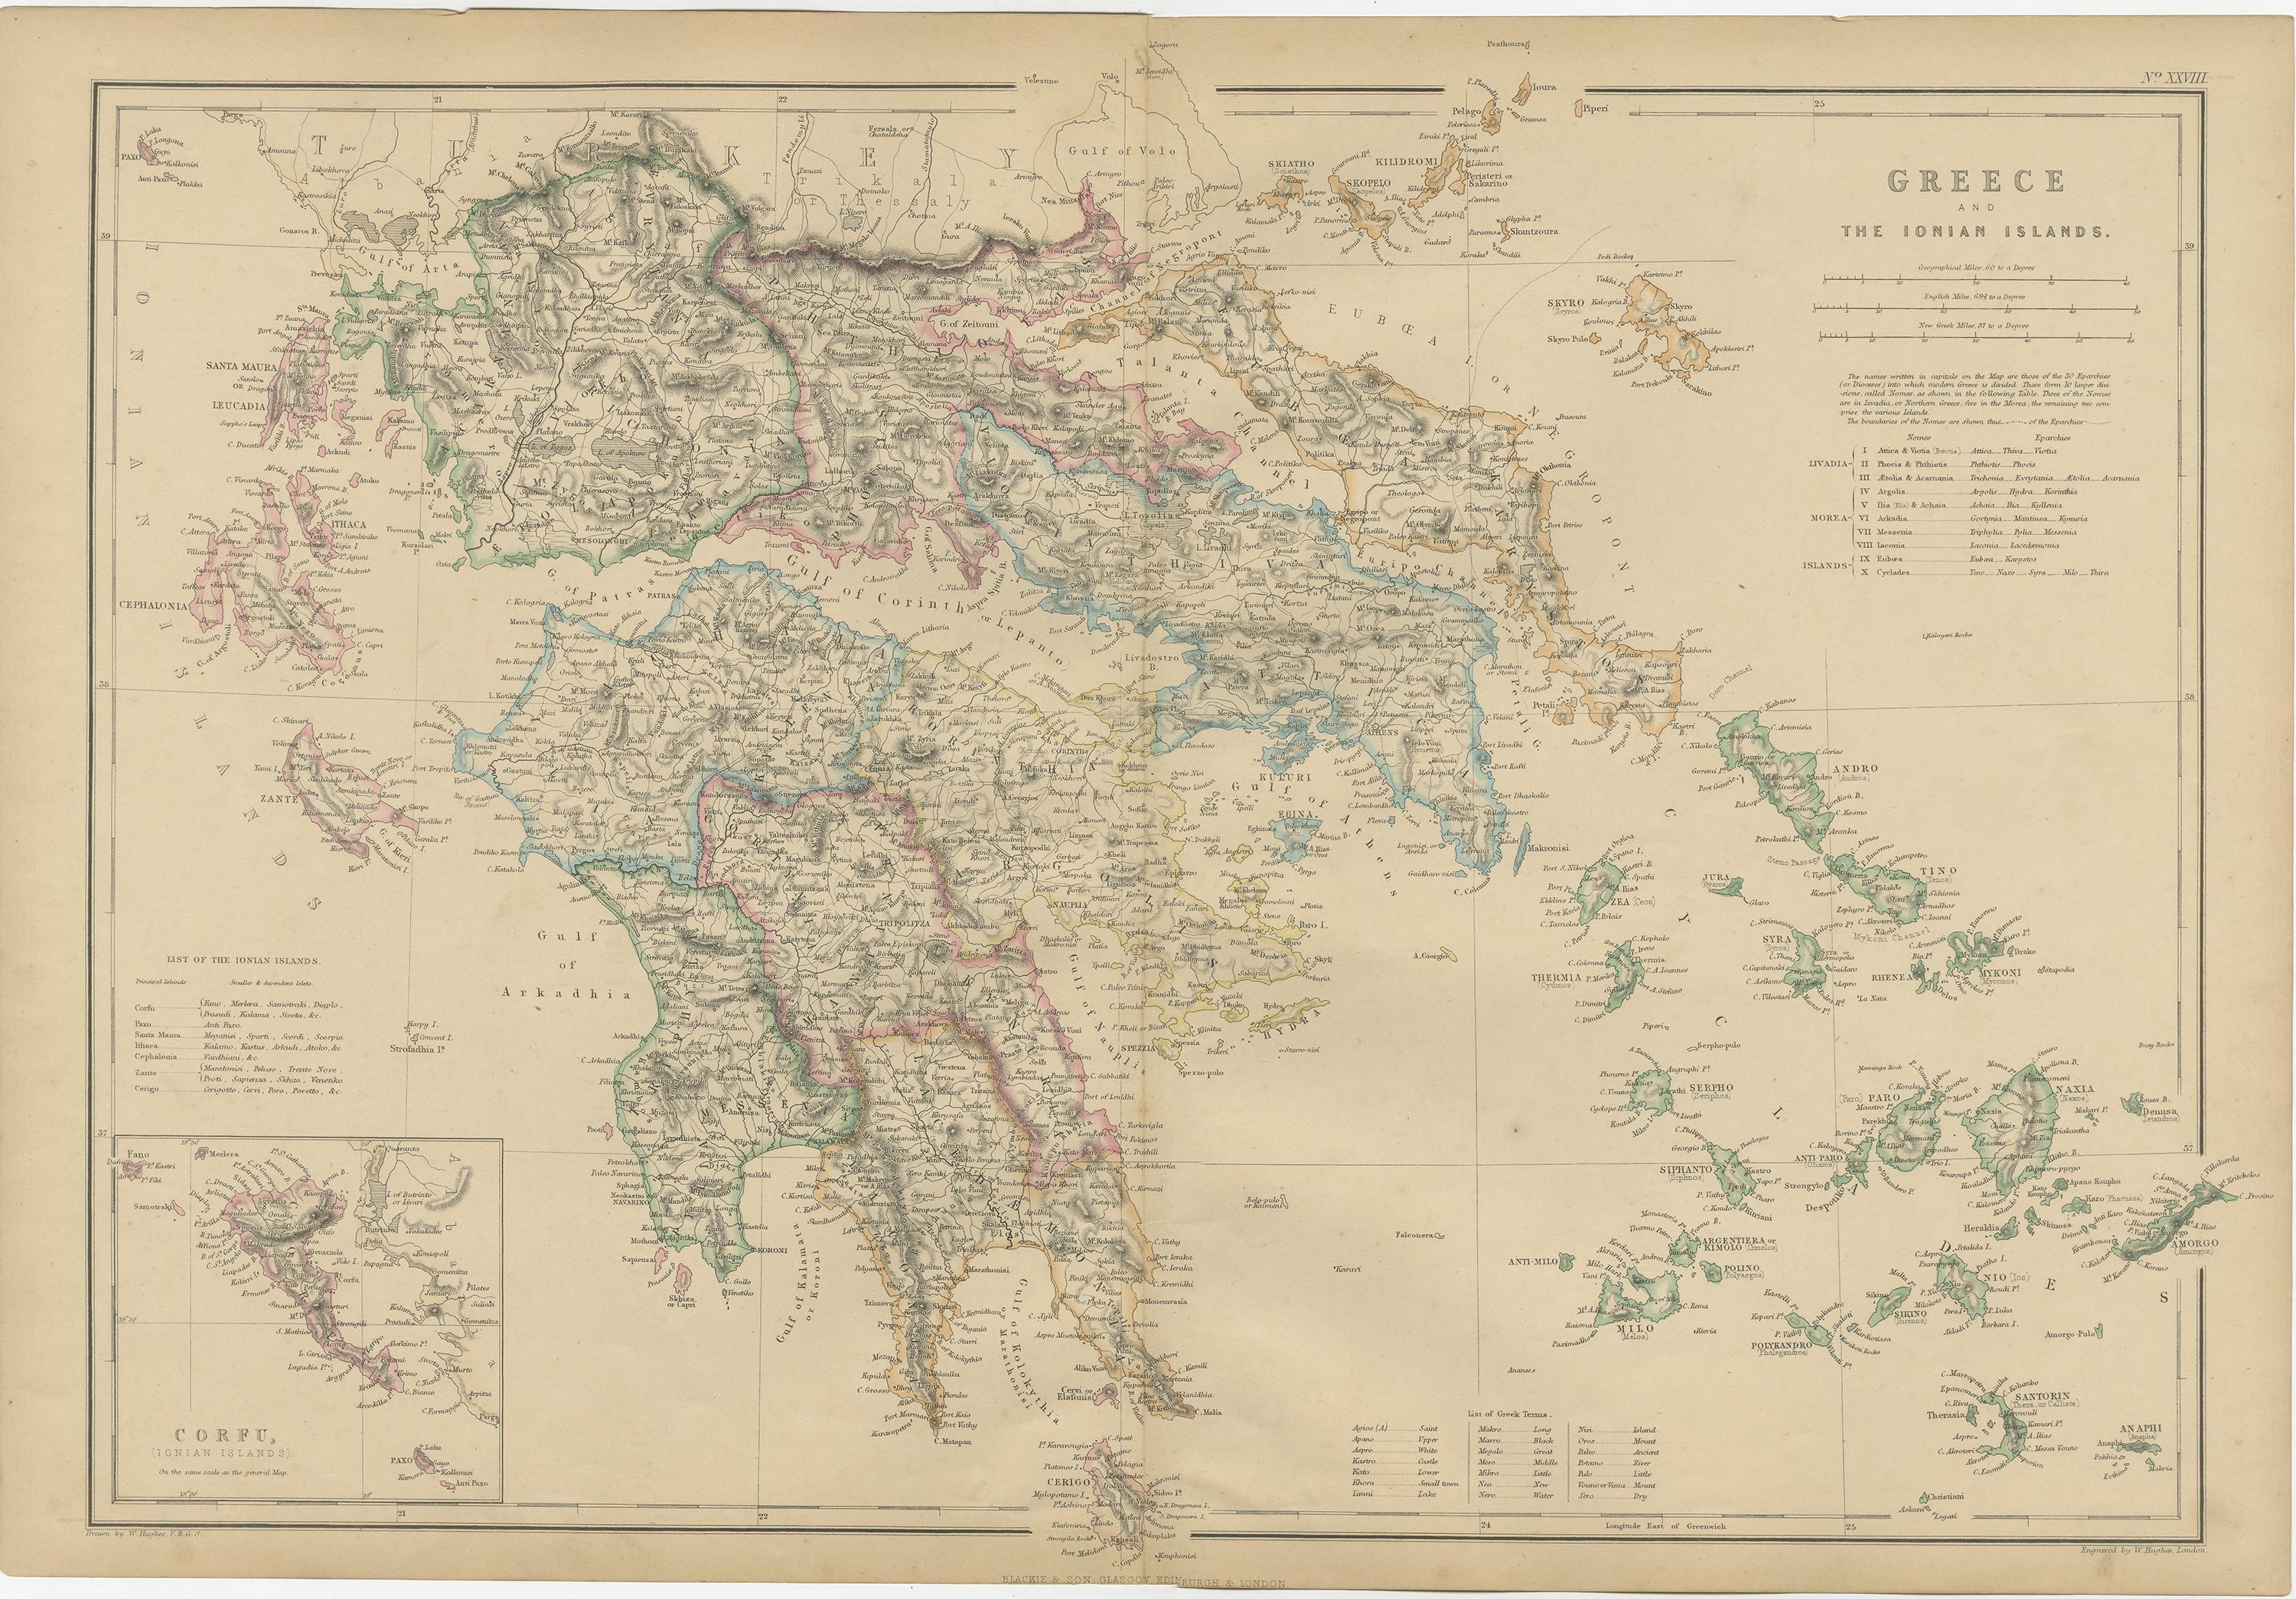 corfu greece map